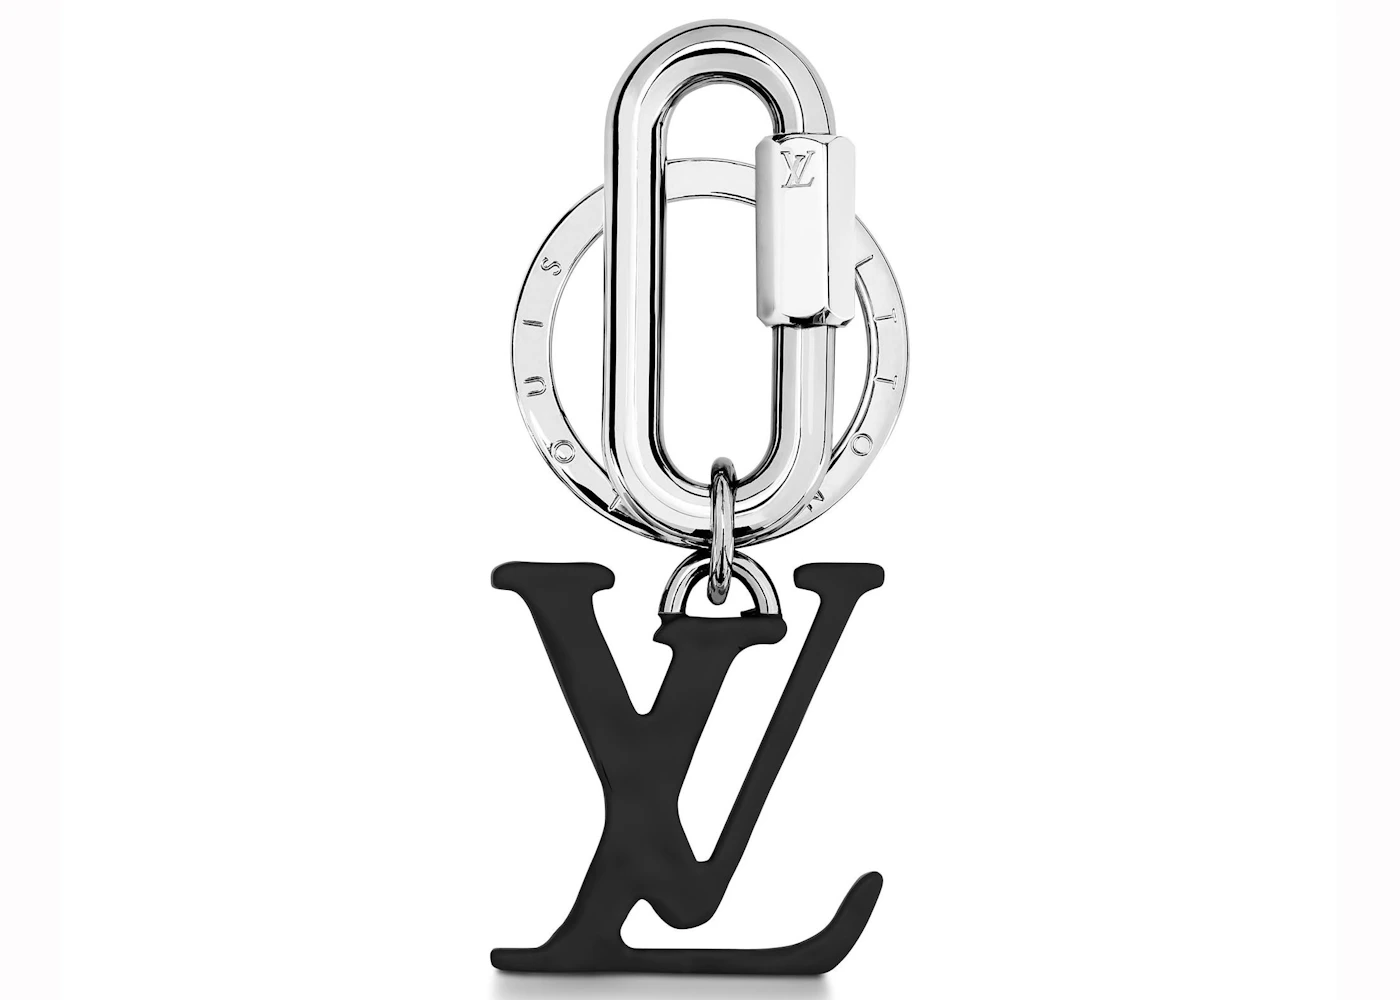 LOUIS VUITTON LV Capucines Key Holder Bag Charm Black